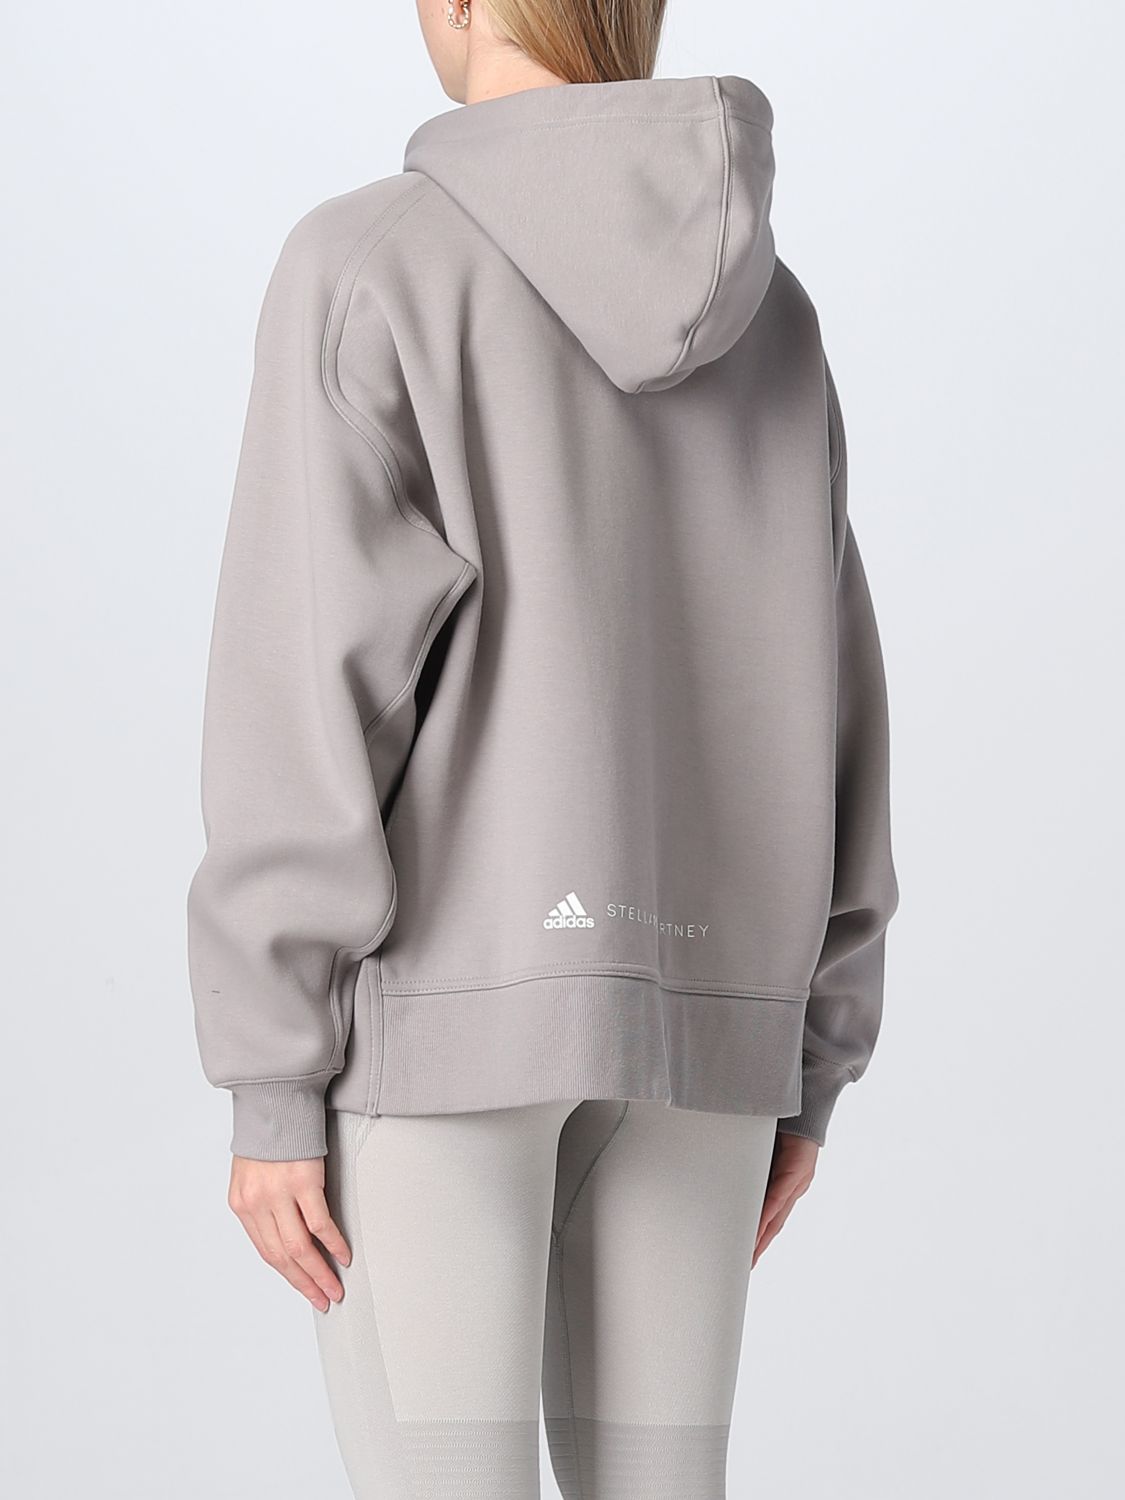 Sweatshirt Adidas By Stella Mccartney: Adidas By Stella Mccartney Damen Sweatshirt grau 3